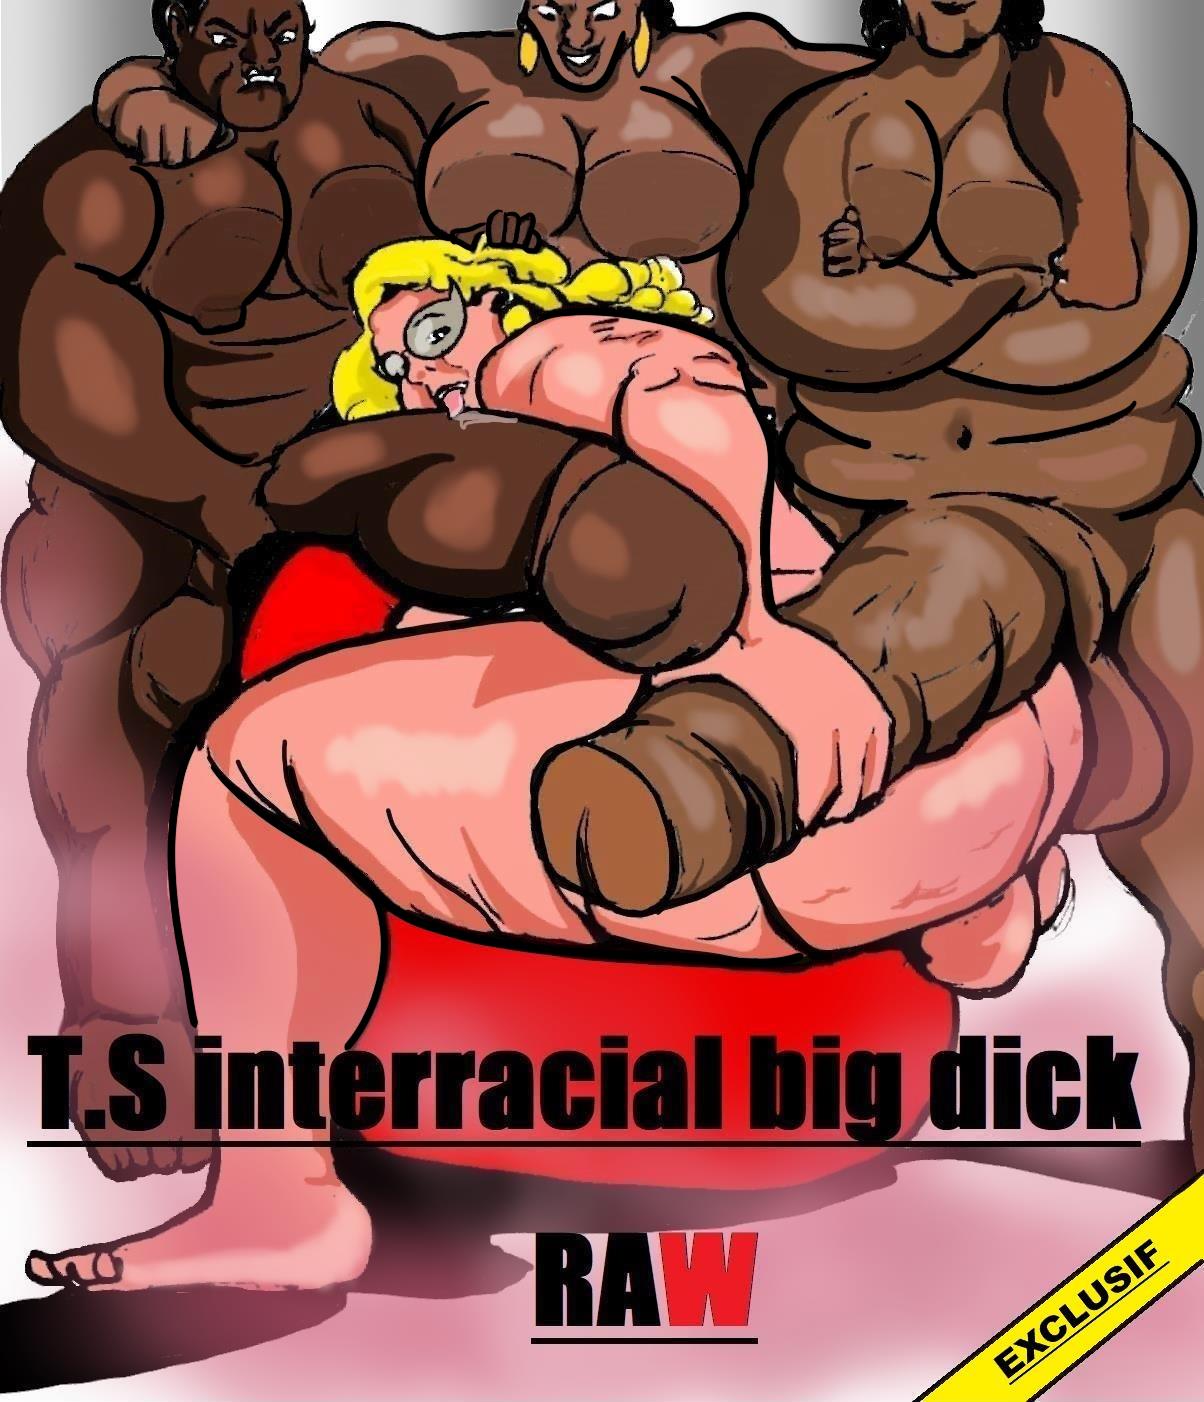 Shemale Interracial Big Dick Raw- Carter Tyron - Porn Cartoon Comics